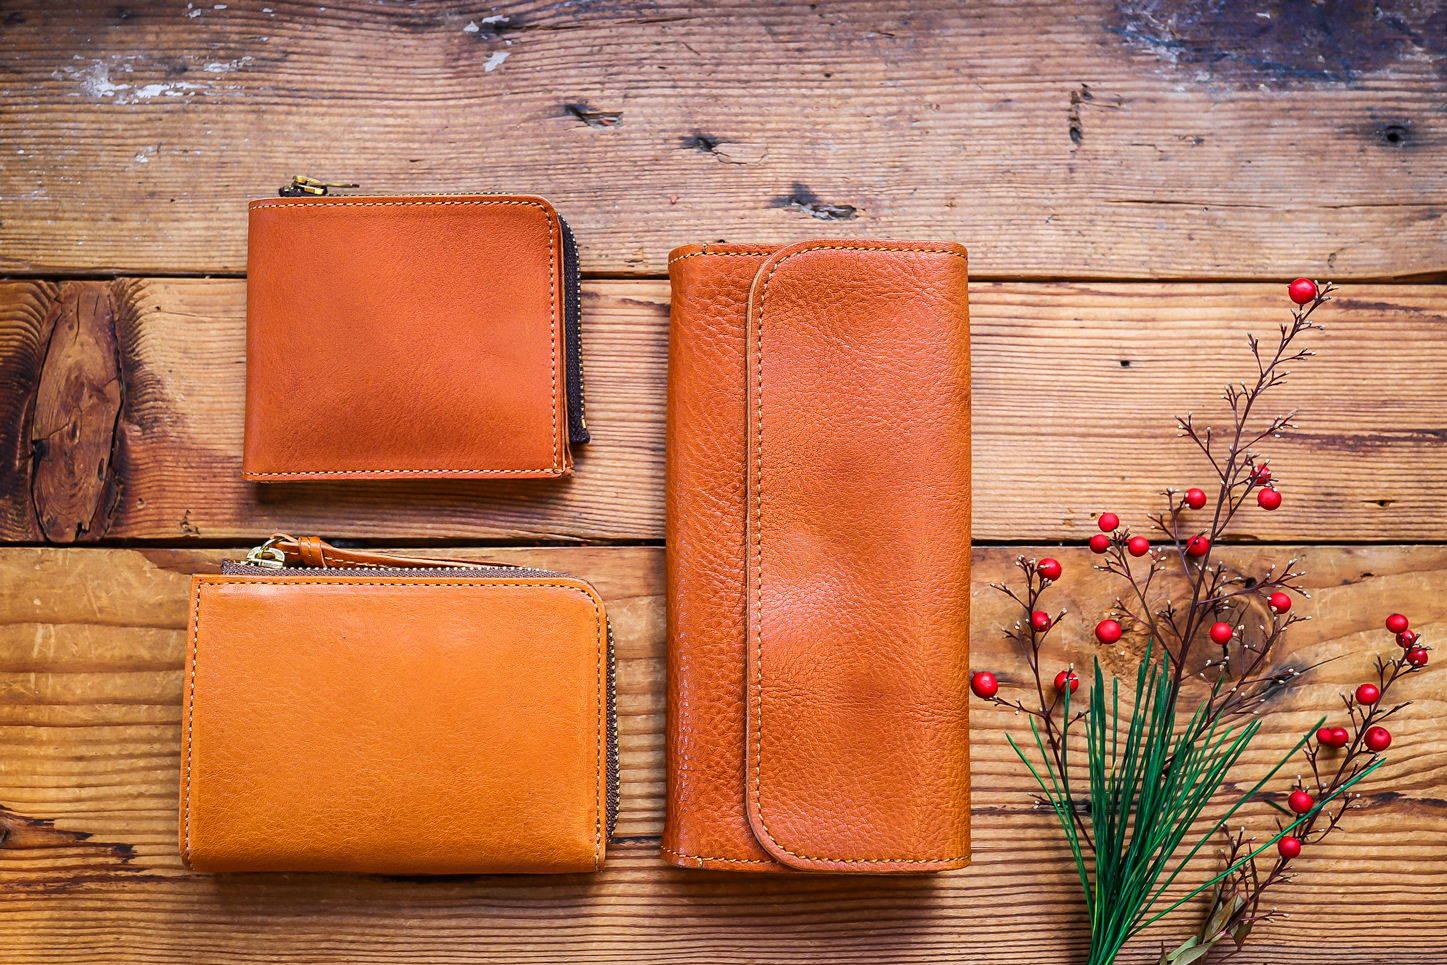 年 特別な年から育てたい栃木レザーの財布 Slow スロウ 公式サイト 革製のバッグ 財布 等の製造販売